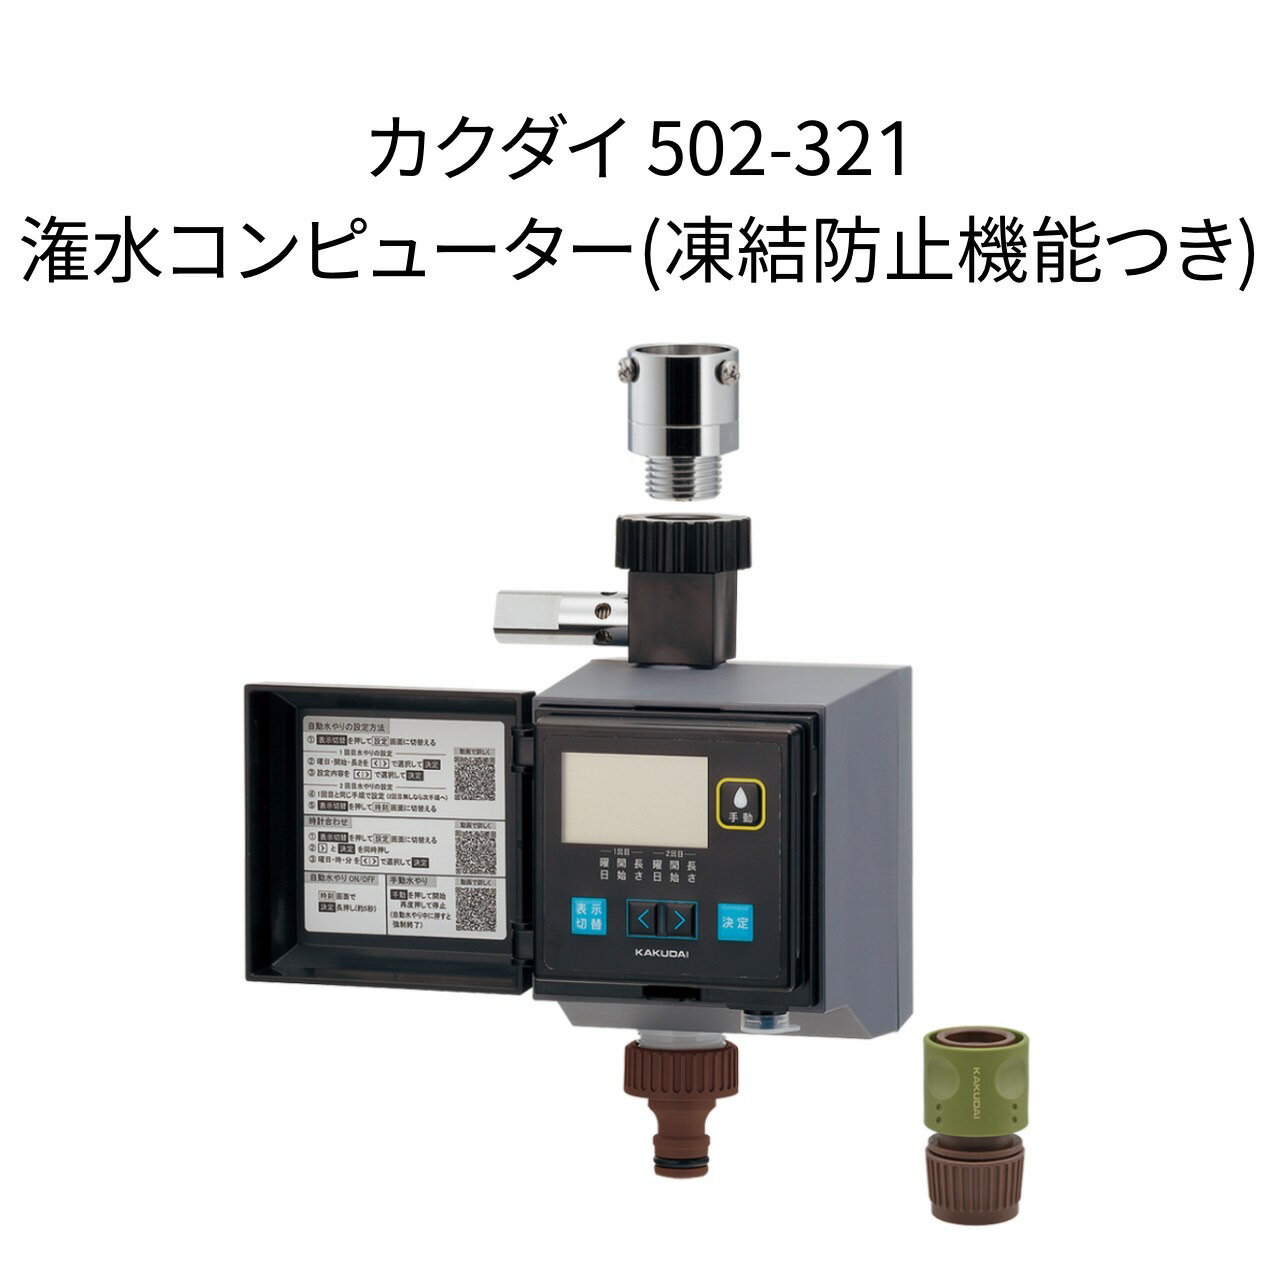 【限定在庫】カクダイ 502-321 潅水コンピューター(凍結防止機能つき) KAKUDAI ガーデン 電池式 潅水コンピューター